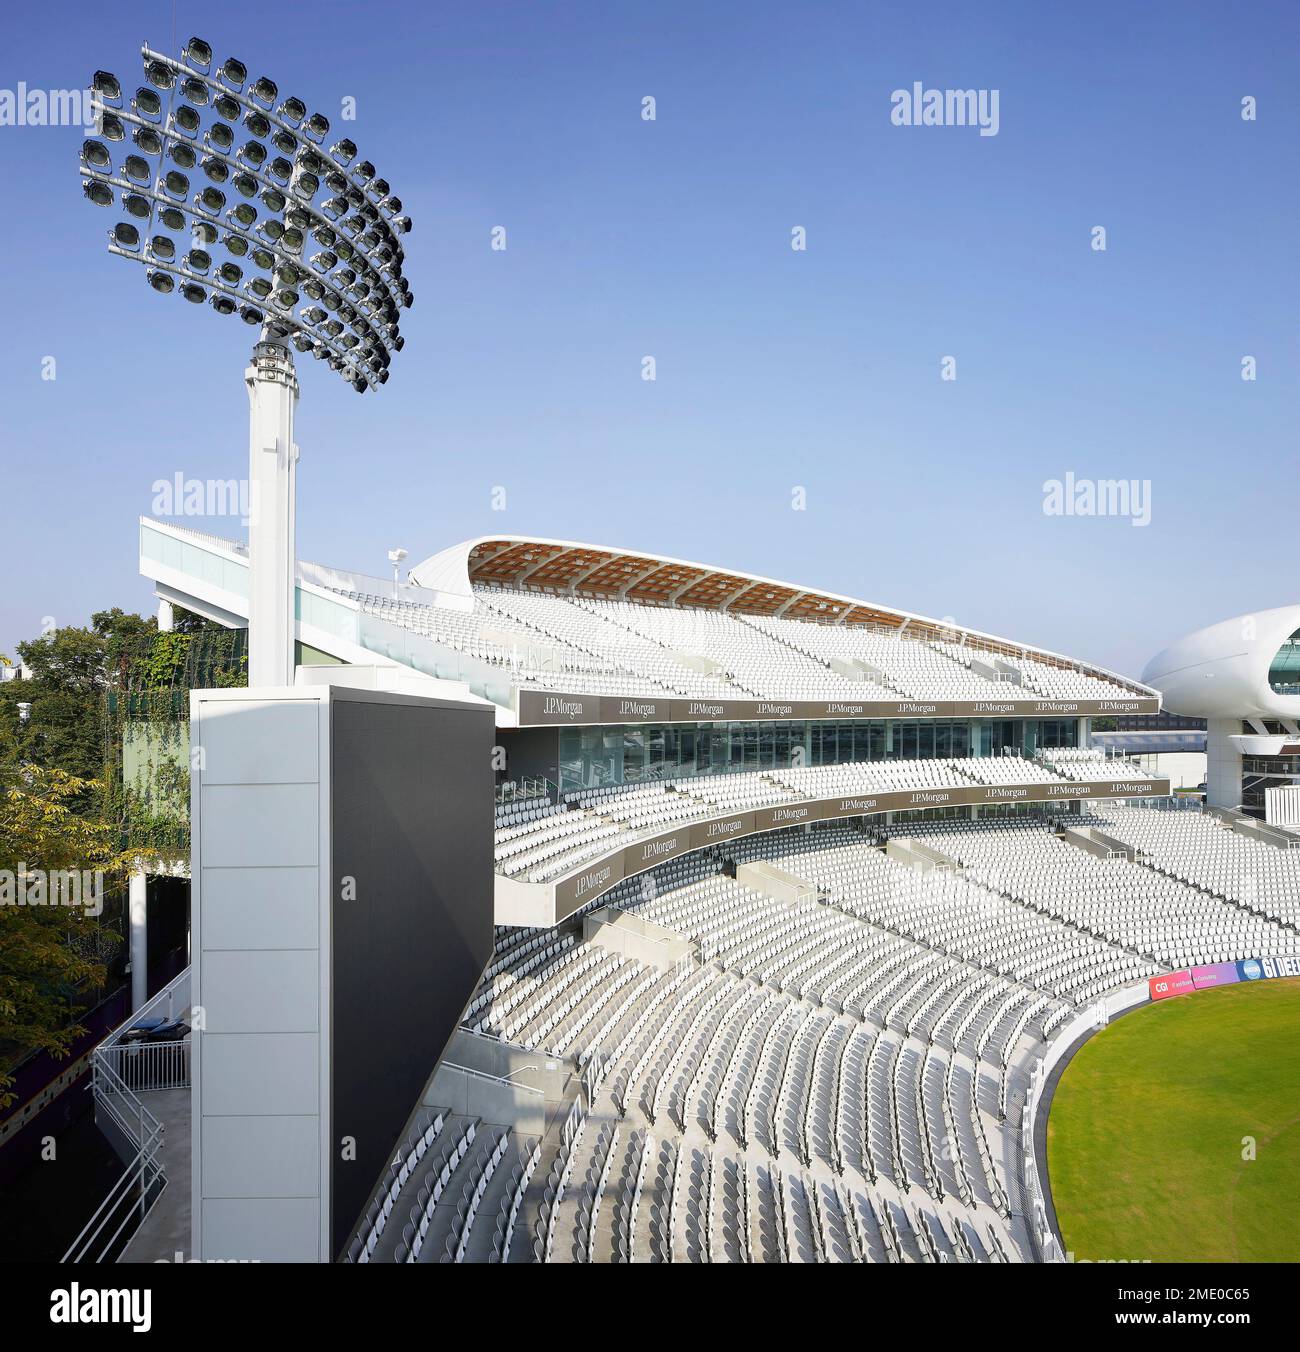 Vue d'ensemble surélevée avec terrain de cricket et nouveau stand. Lord's Cricket Ground, Londres, Royaume-Uni. Architecte : Wilkinson Eyre Architects, 2021. Banque D'Images